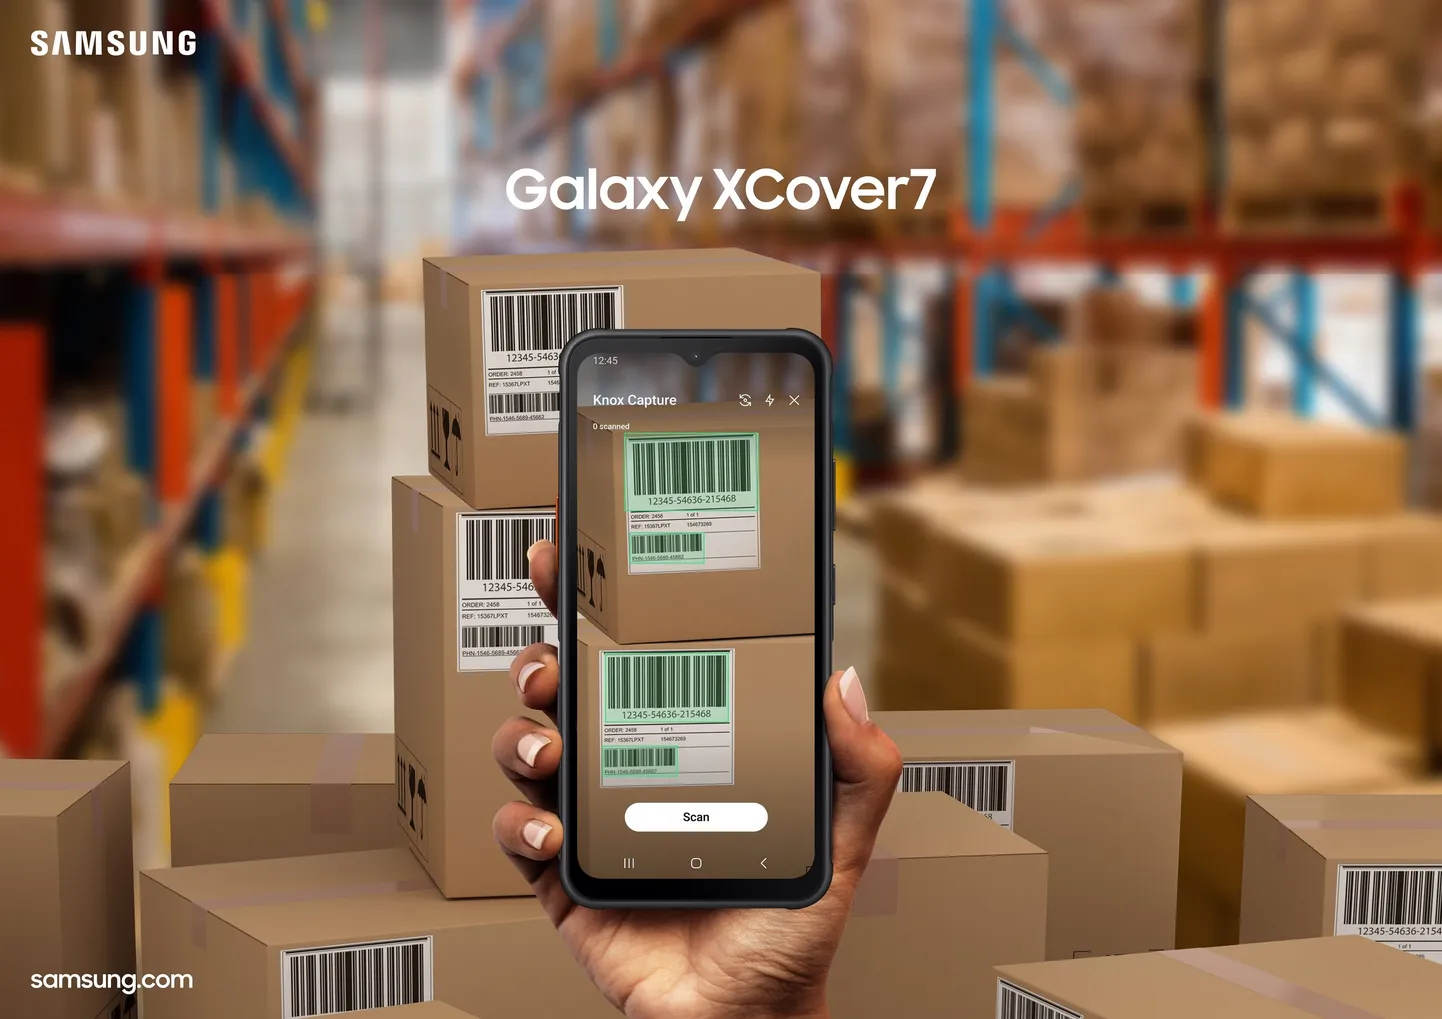 Galaxy Xcover7 on mõeldud ärikasutajatele nendel töökohtadel, kus nutiseade saab palju vintsutusi, kuid sobib ka matkajale või neile kasutajatele, kellel telefon pidevalt käest kipub libisema. Militaarstandardi vastupidavus tagab kindlama kaitse.